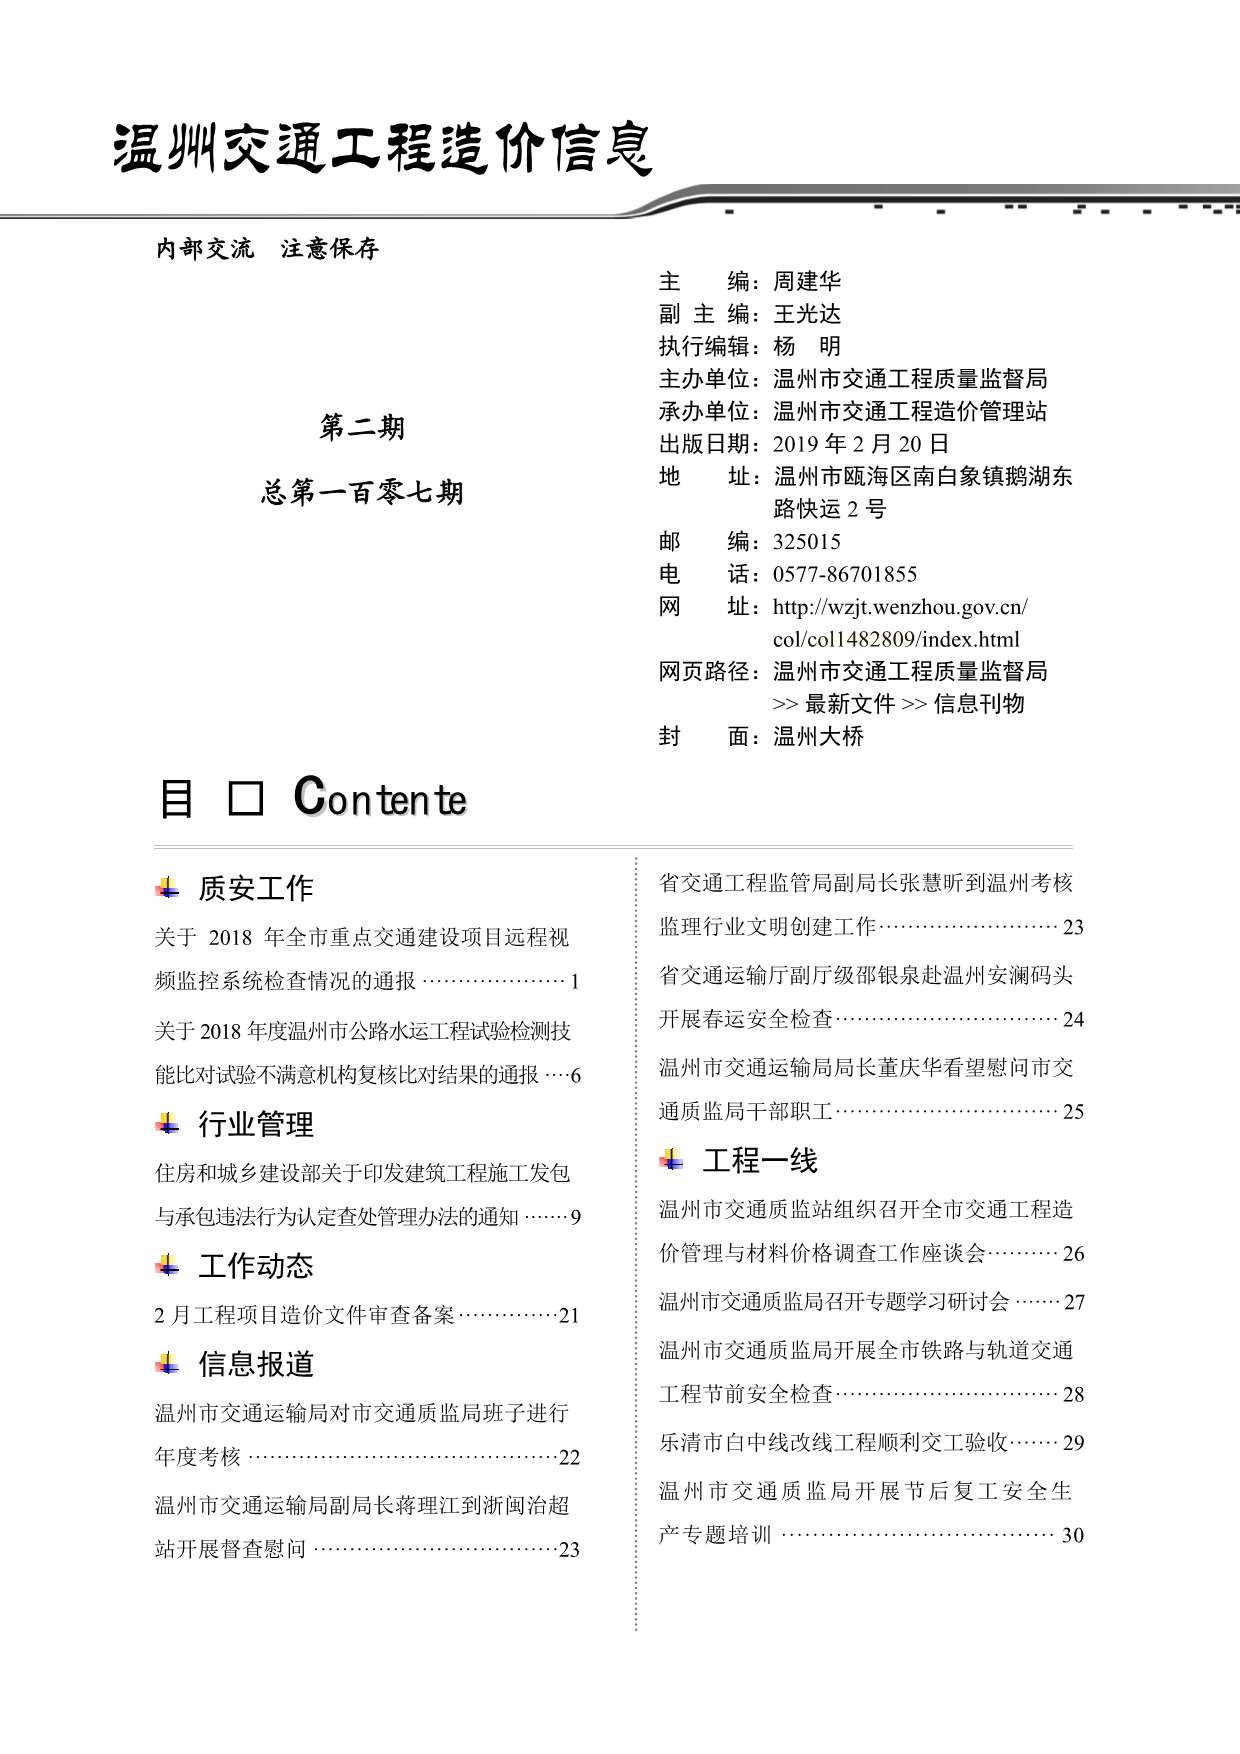 2019年2期温州交通信息价pdf扫描件